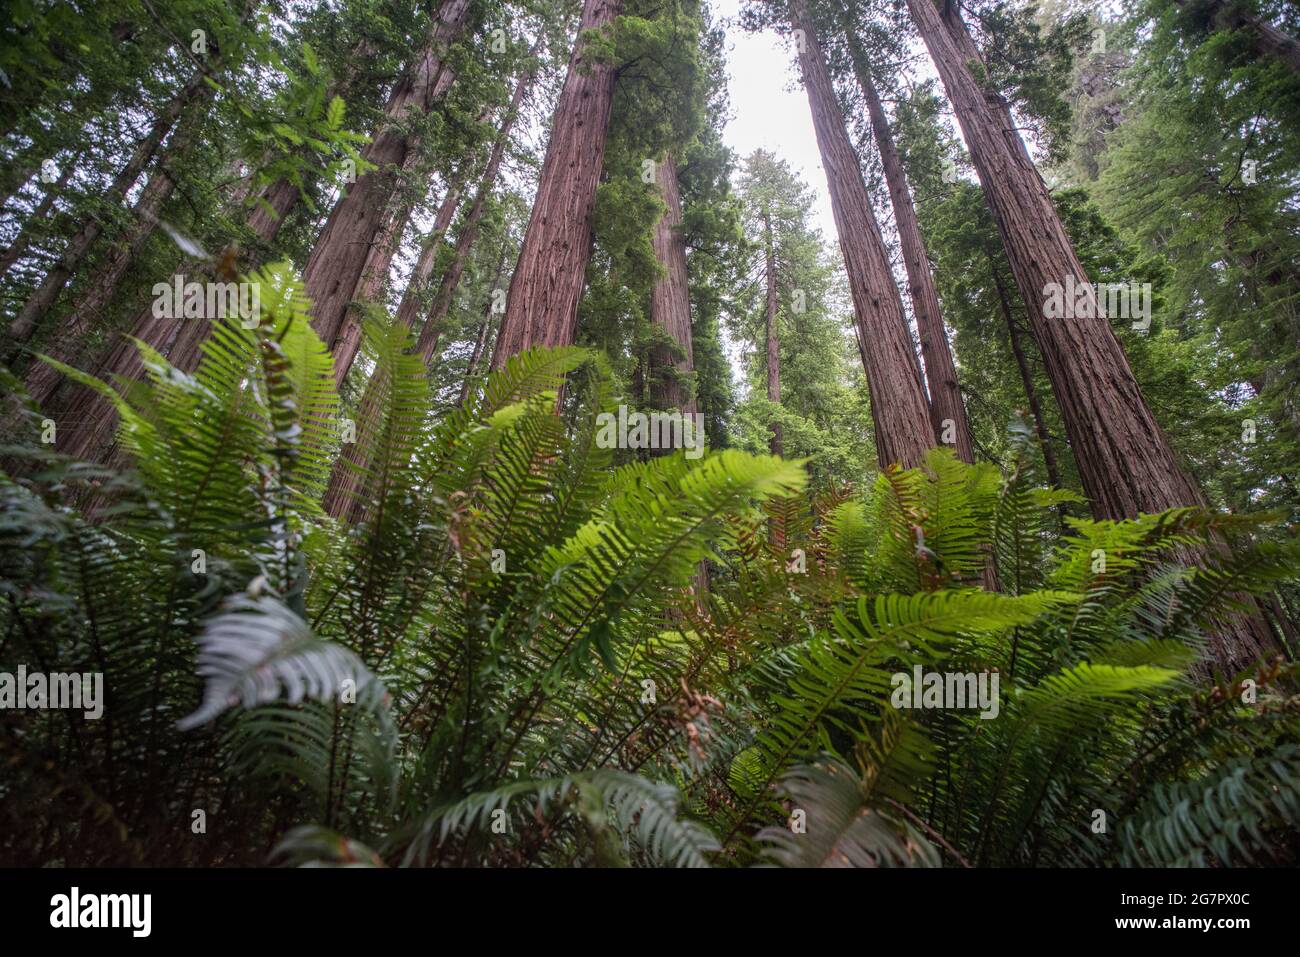 Fougères luxuriantes et grands séquoias (Sequoia sempervirens) dans le parc national Jedediah Smith Redwoods, en Californie du Nord, États-Unis. Banque D'Images